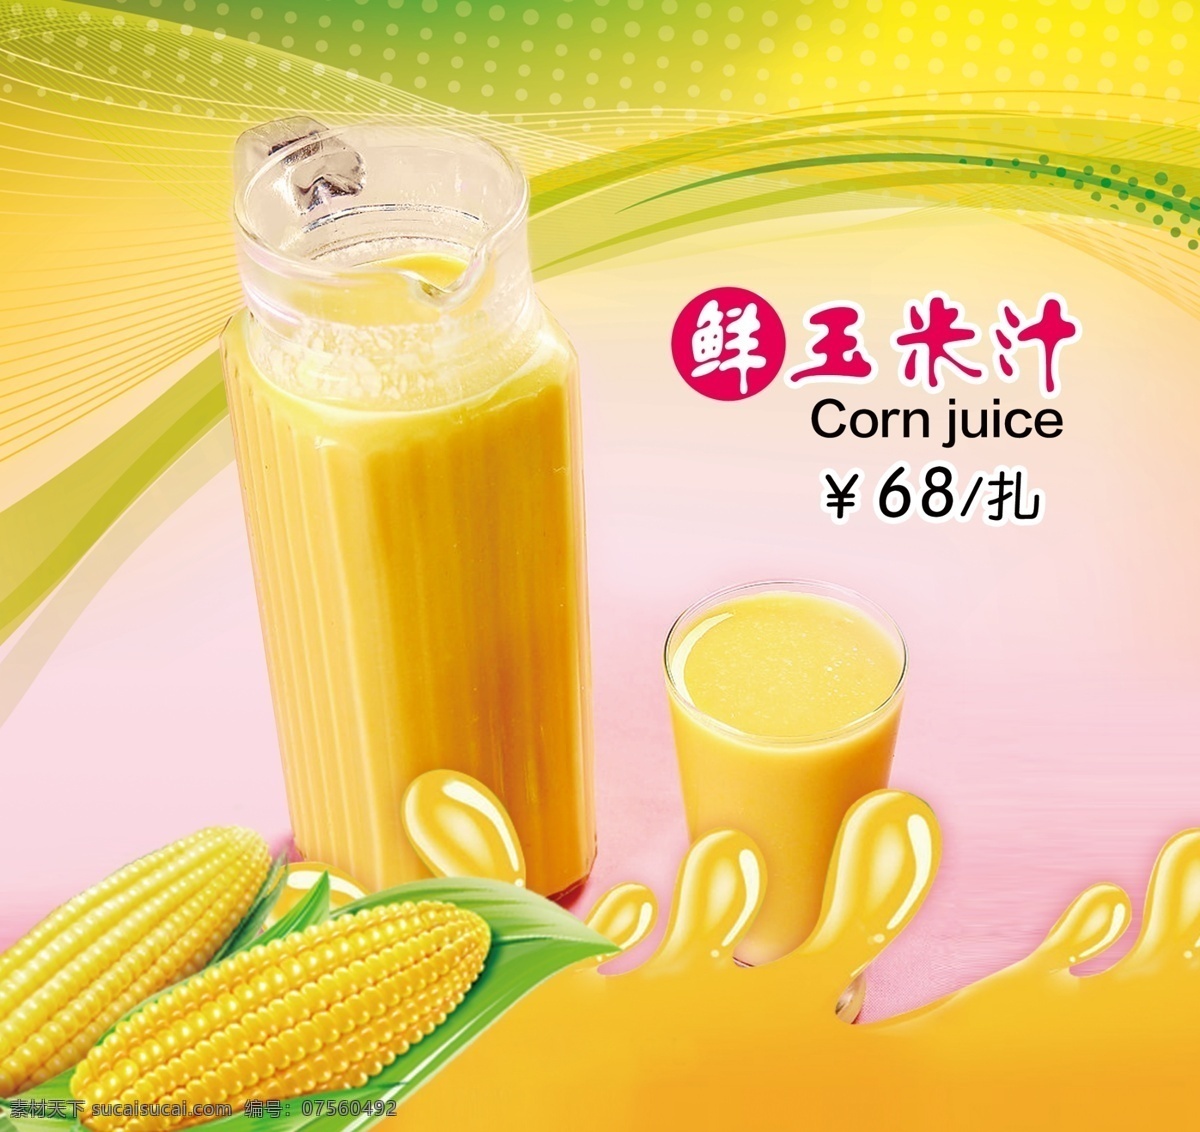 香甜 玉米 汁 广告 新品推荐 玉米汁 酒水菜单素材 广告玉米 美味 psd源文件 餐饮素材